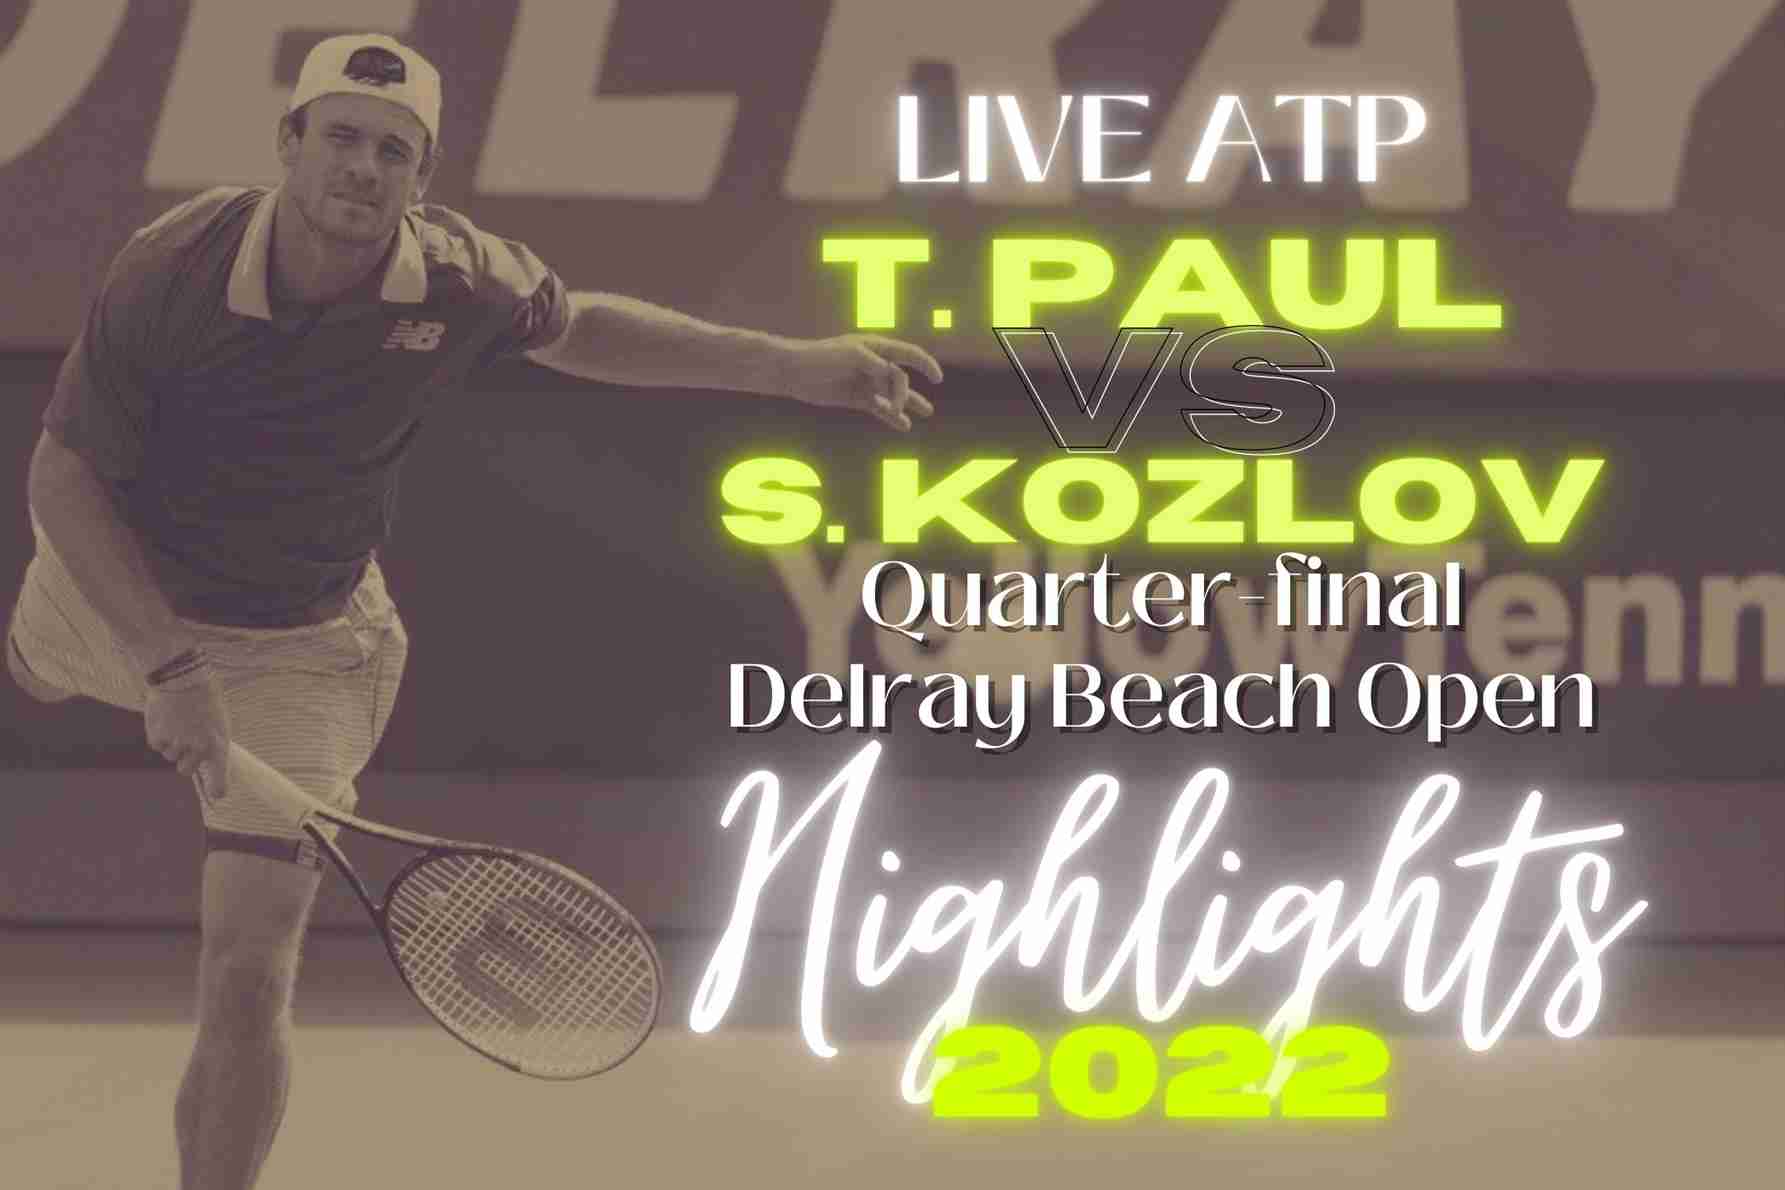 Paul Vs Kozlov Quarterfinal 2022 Highlights